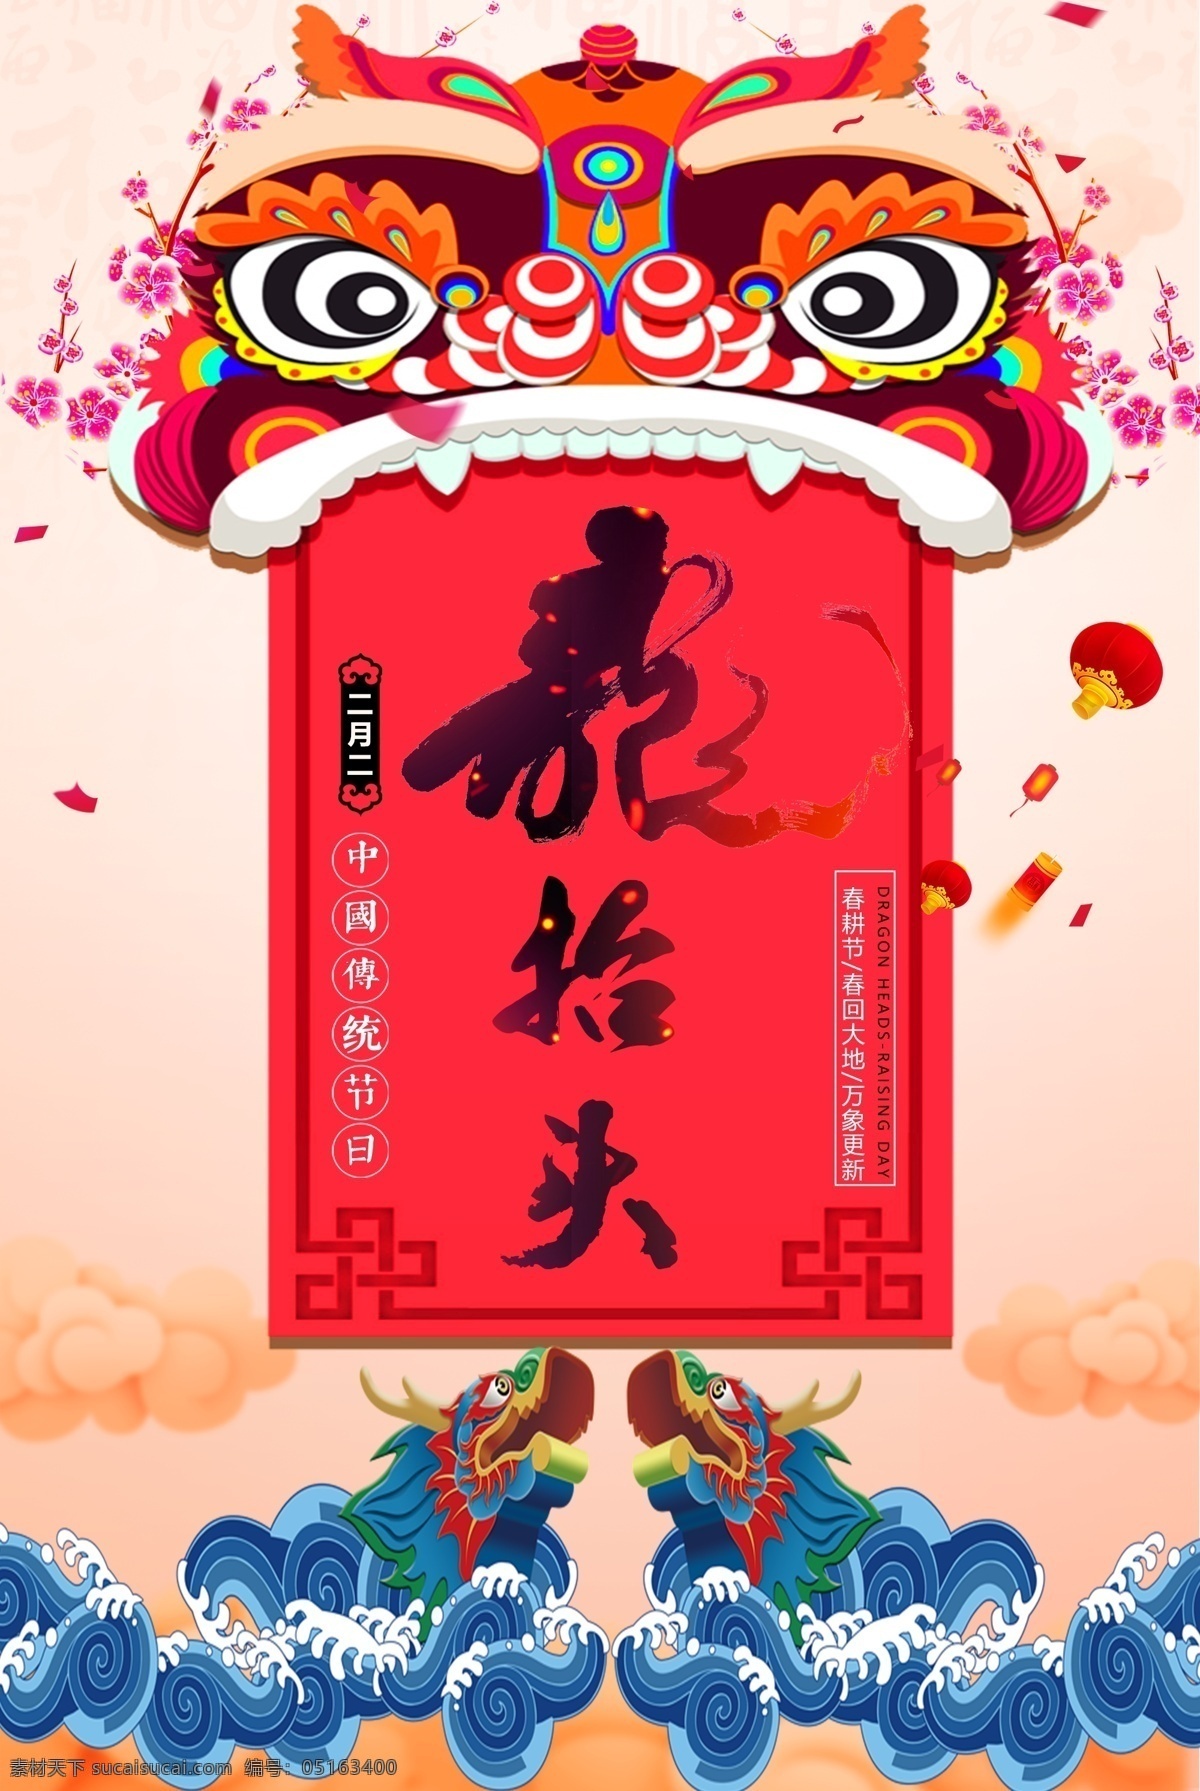 二月 二龙 抬头 节日 海报 海报模板 中国传统文化 中国风 传统节日 中国 分 龙 风龙 二 龙抬头 二月二